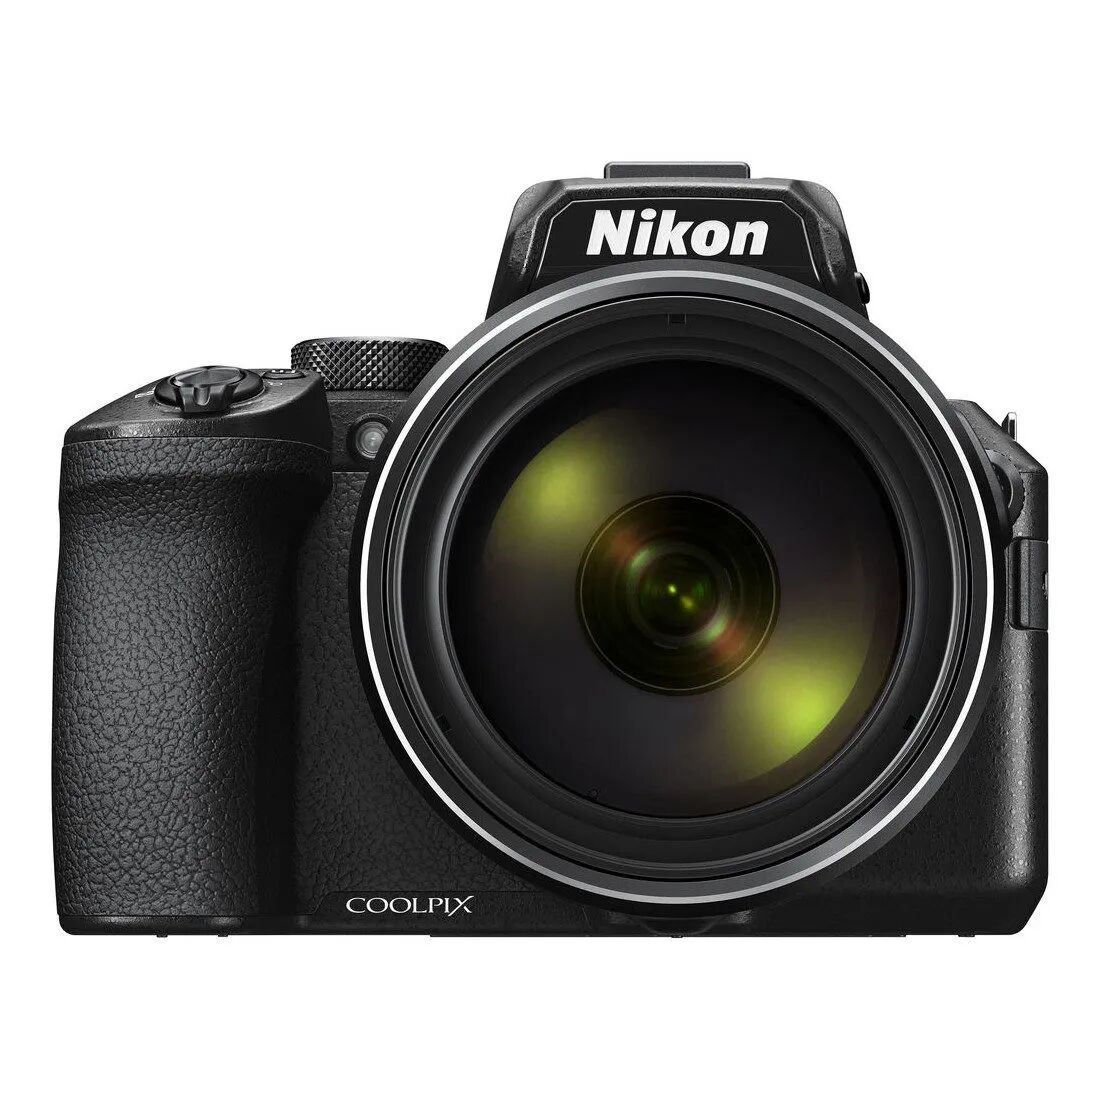 Nikon Coolpix P950 fotocamera compatta - Promo valida fino al 30 Novembre